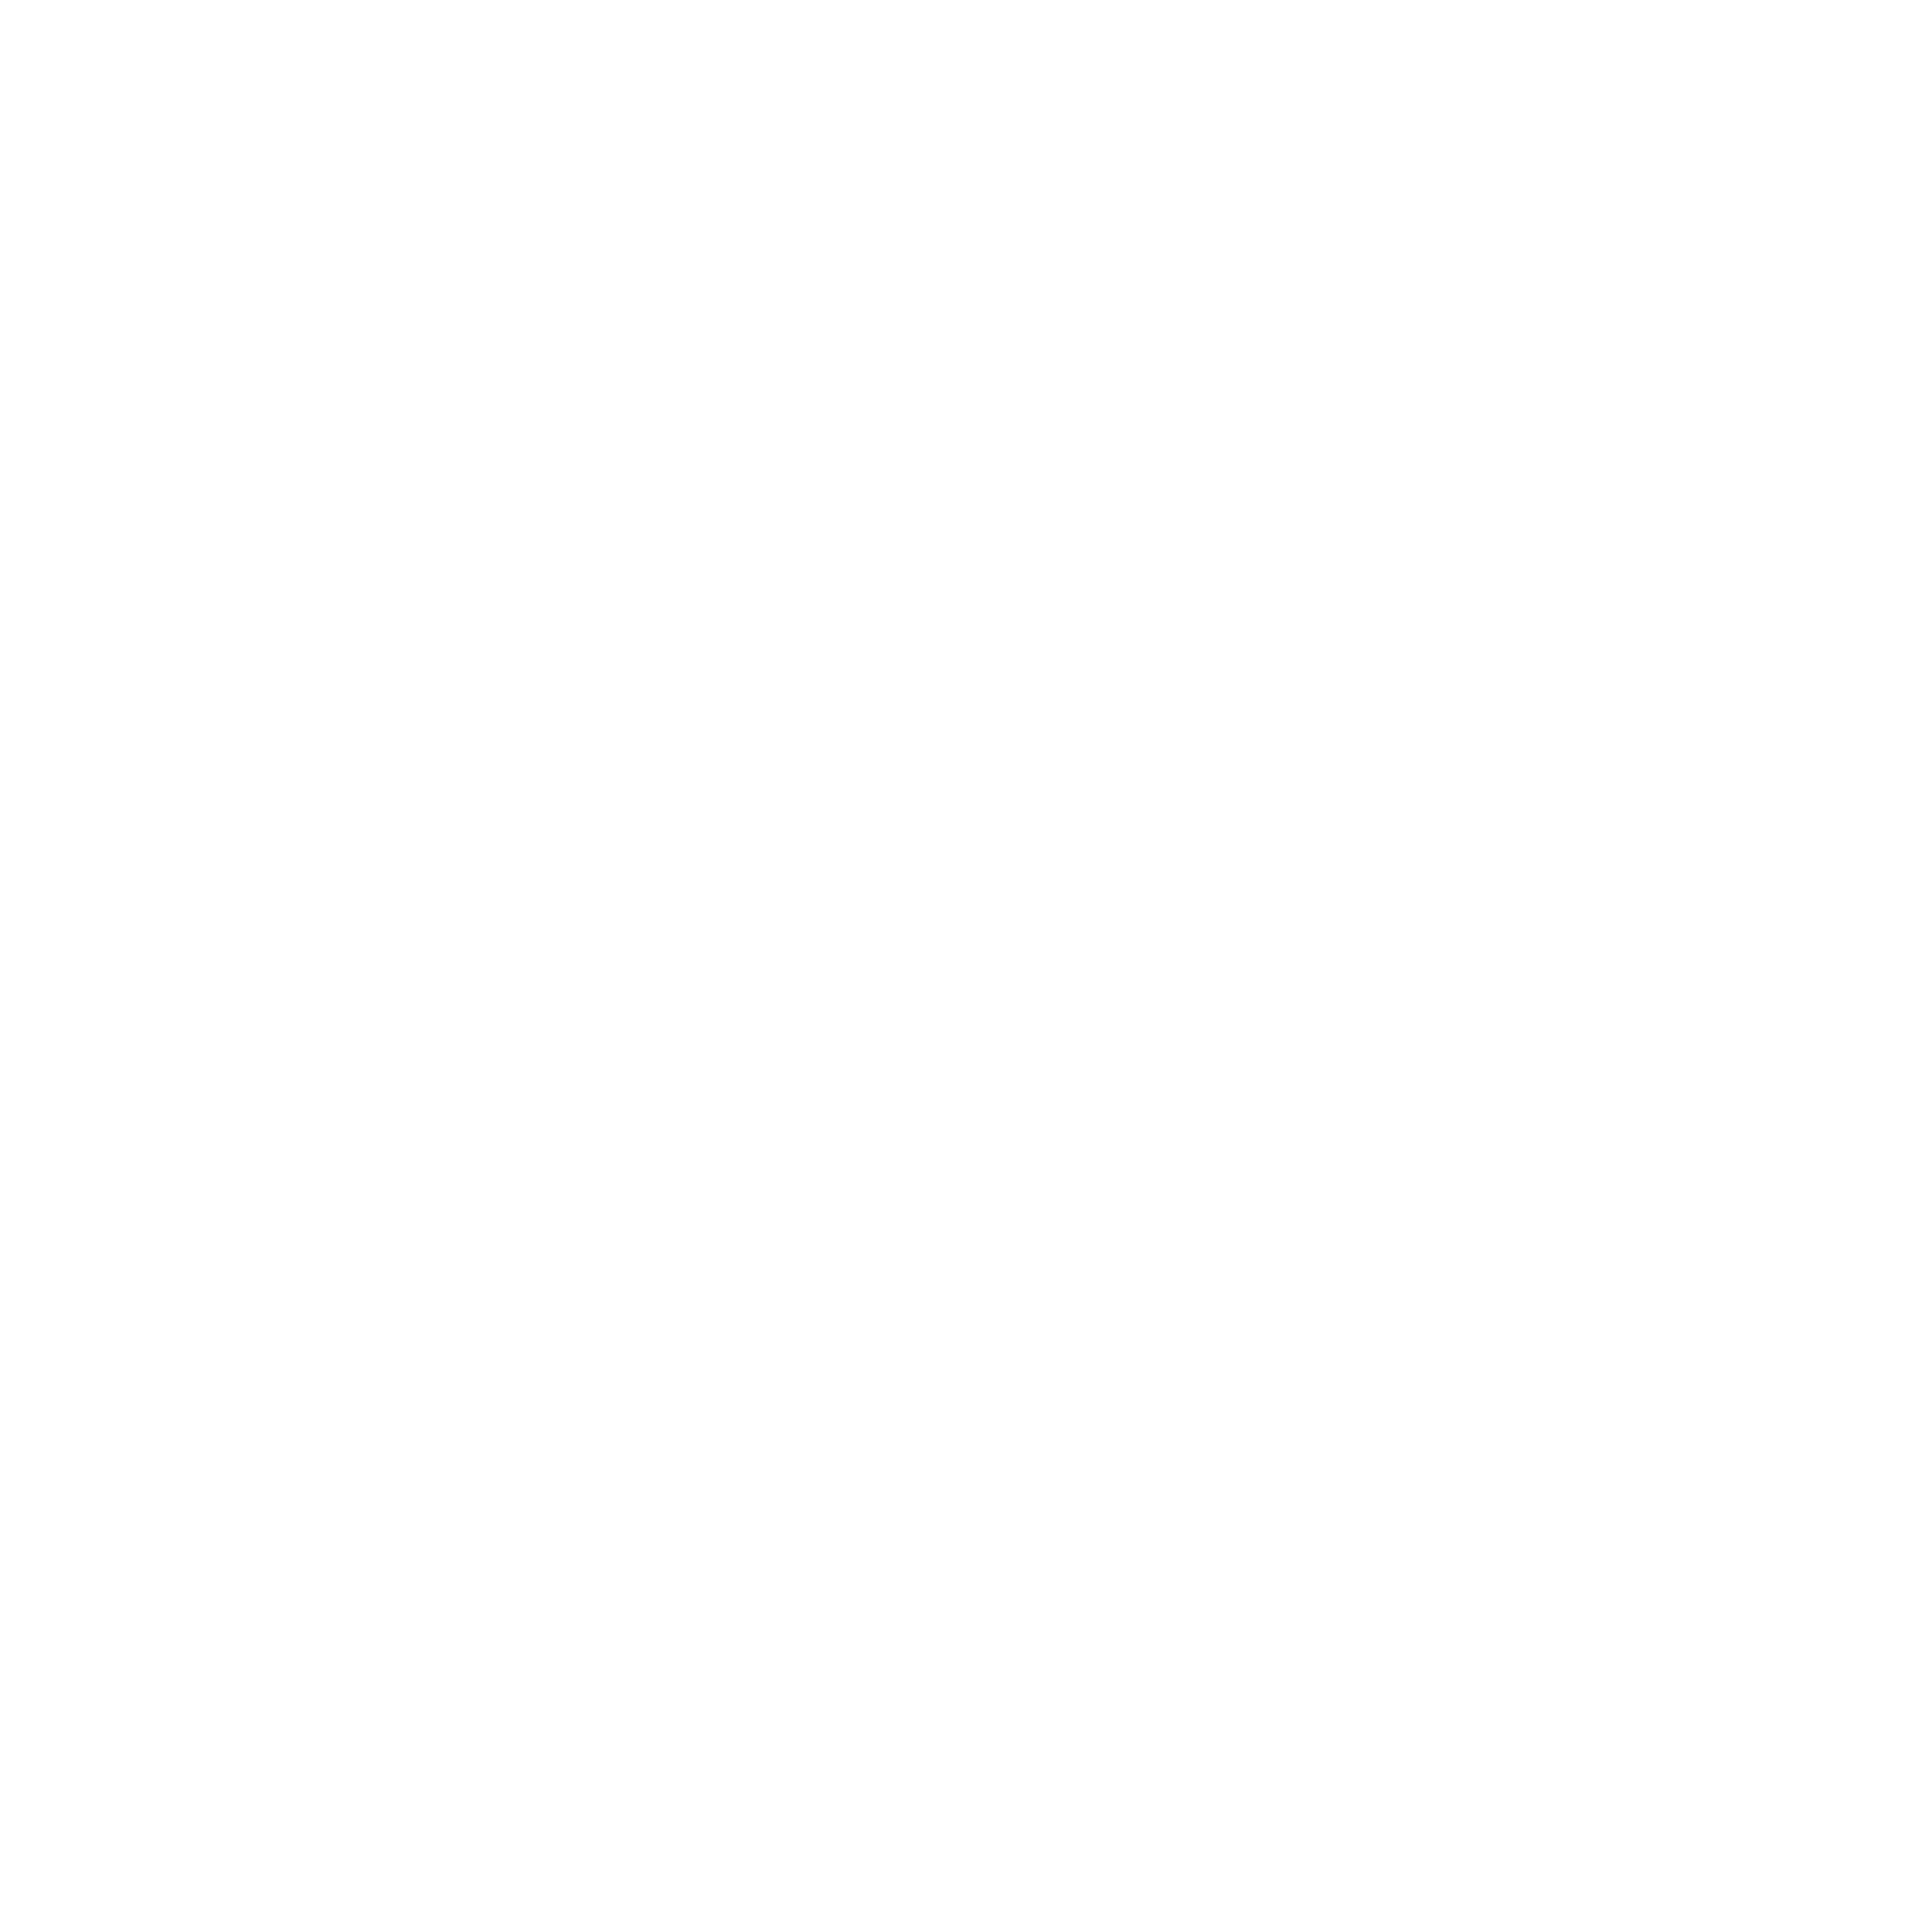 Ataraxia IP